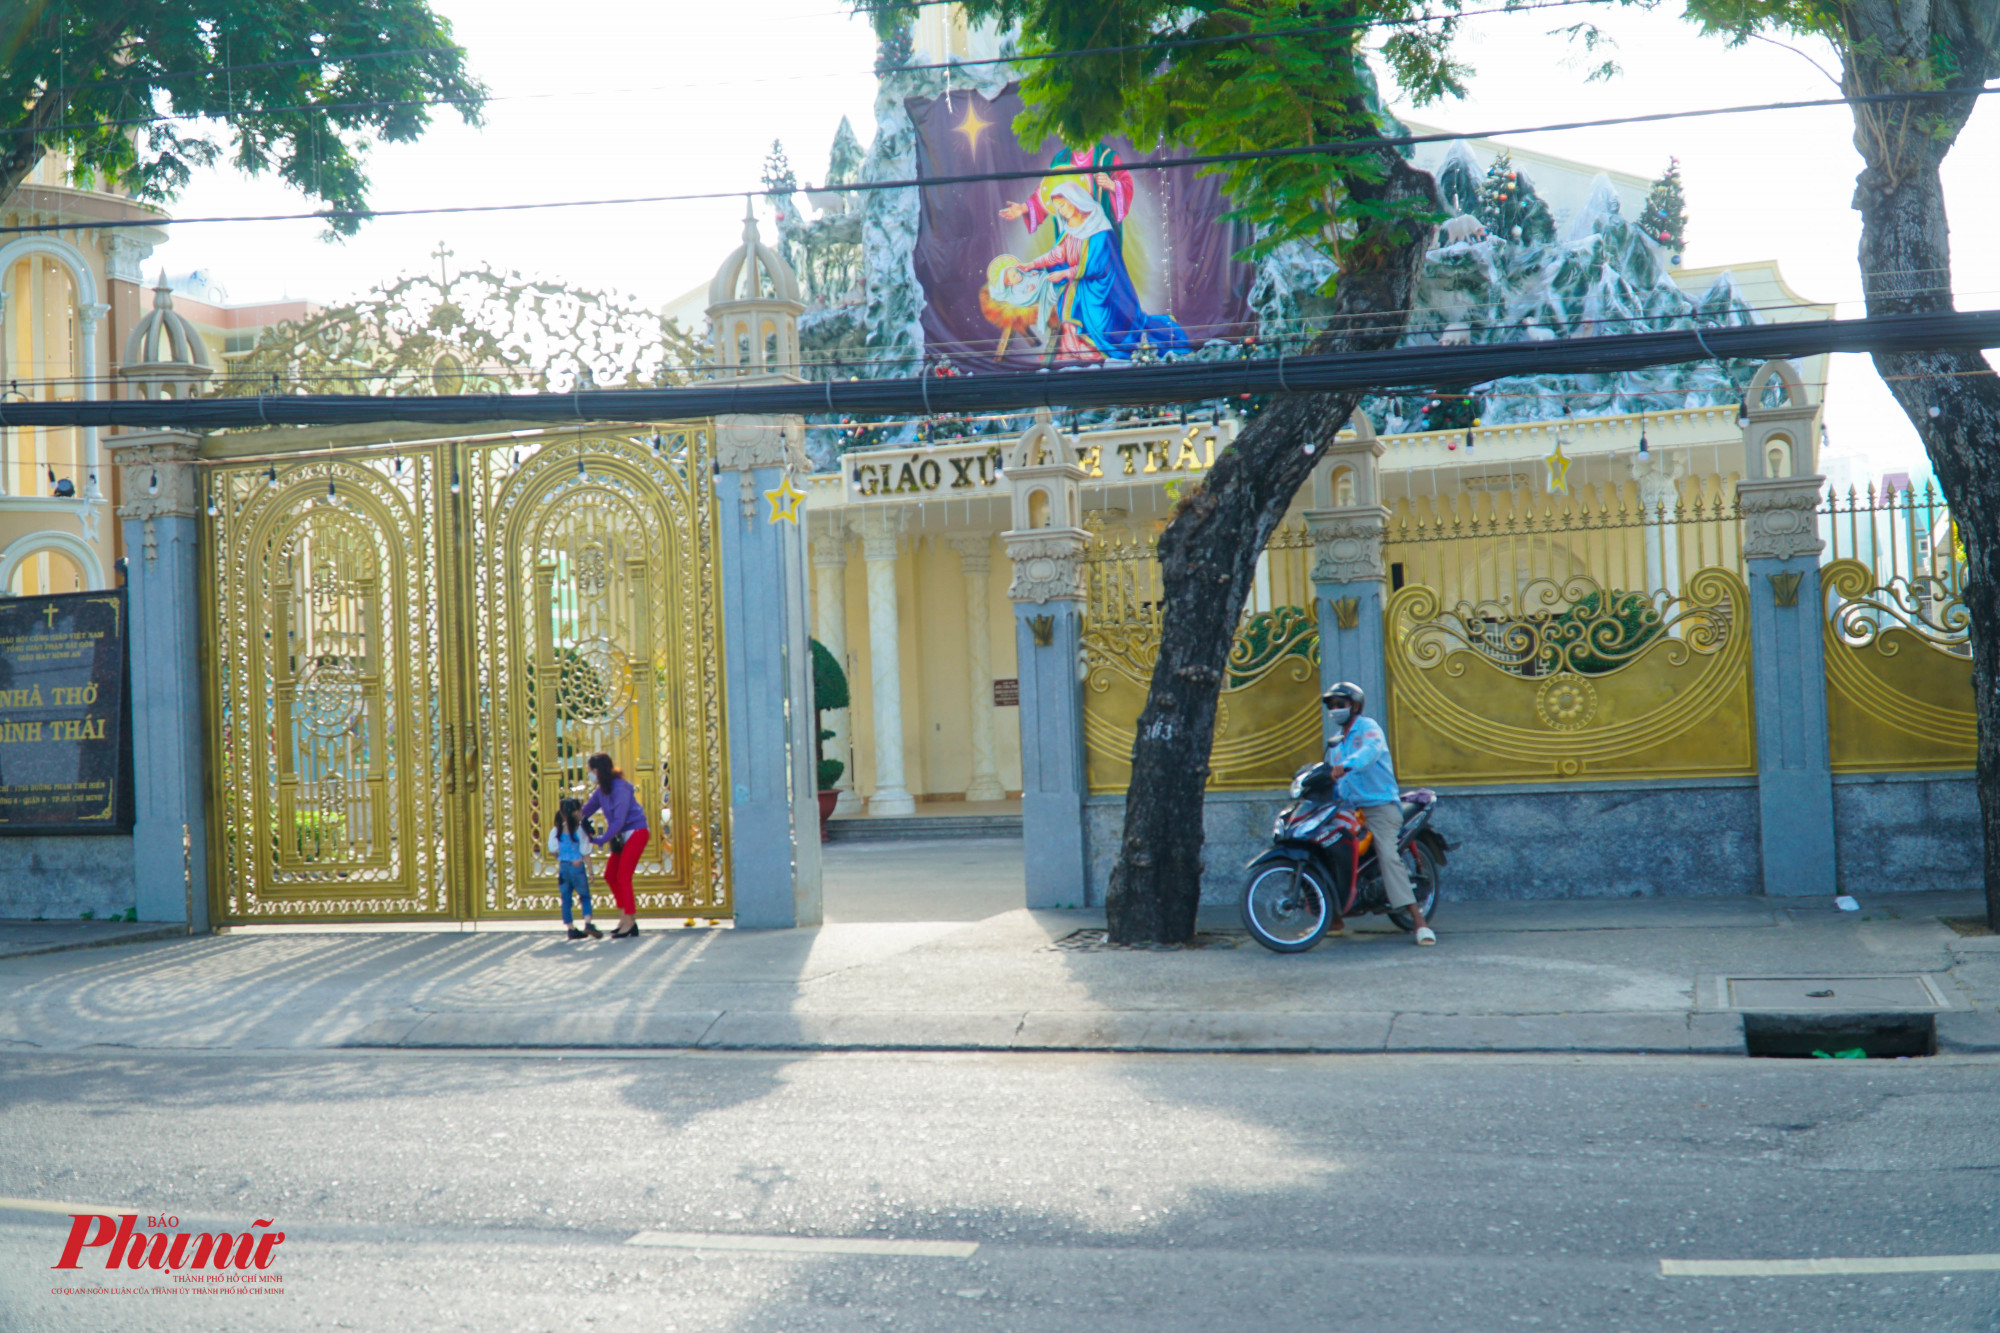 Khu vực trước cổng nhà thờ Bình Thái (đường Phạm Thế Hiển, quận 8) trầm lắm, rất ít người ra vào